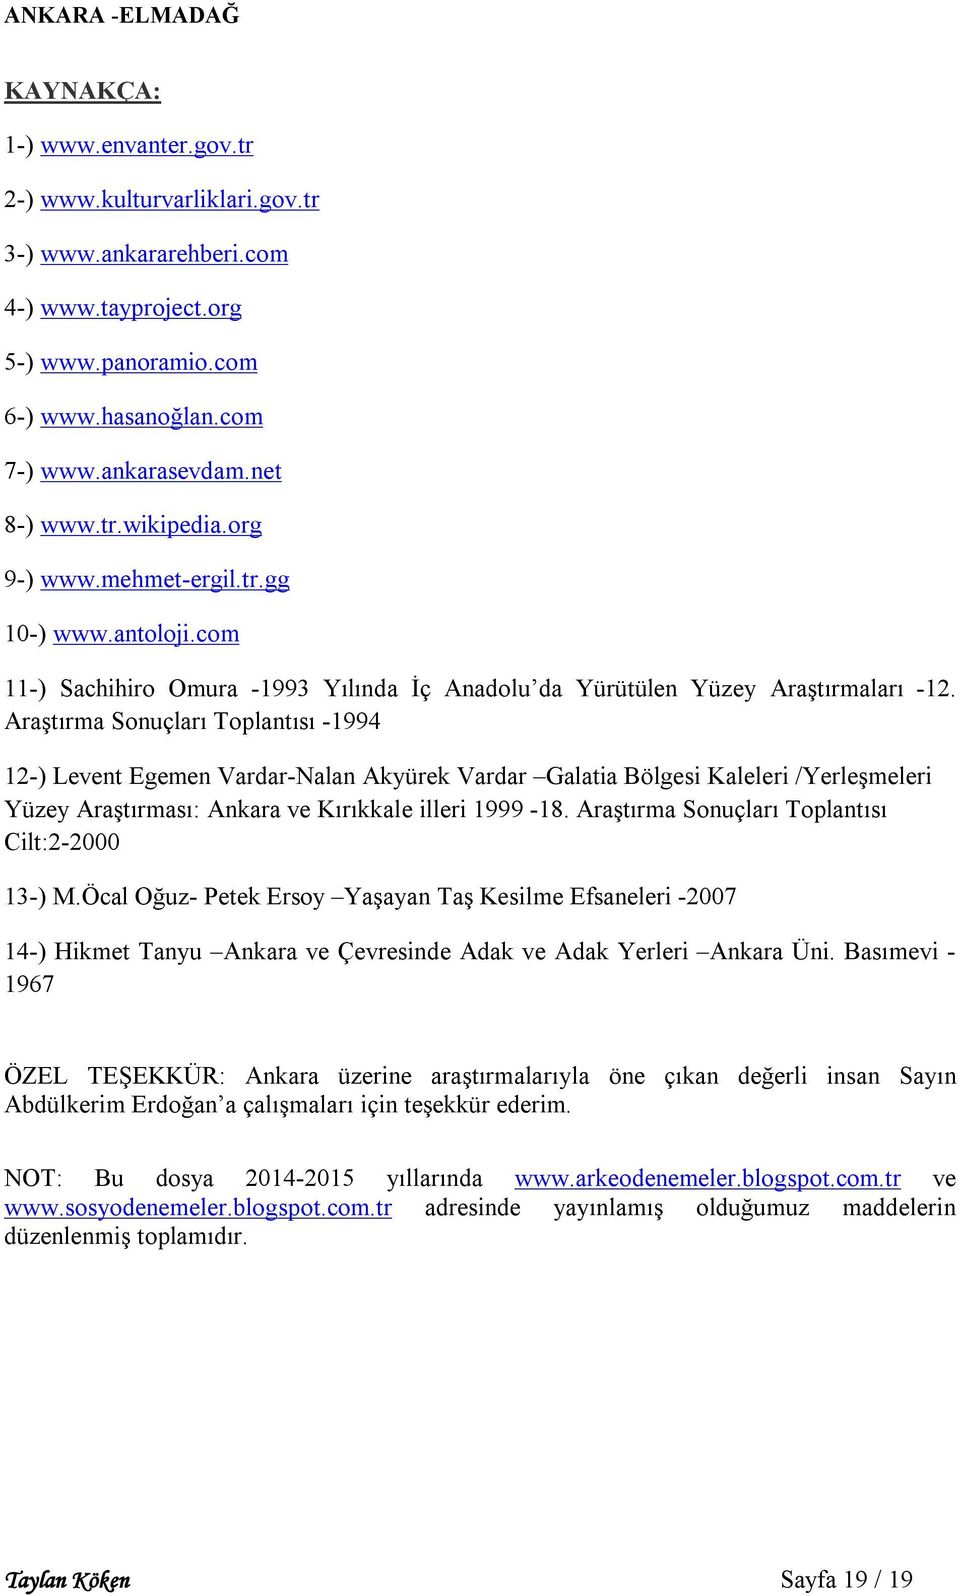 Araştırma Sonuçları Toplantısı -1994 12-) Levent Egemen Vardar-Nalan Akyürek Vardar Galatia Bölgesi Kaleleri /Yerleşmeleri Yüzey Araştırması: Ankara ve Kırıkkale illeri 1999-18.